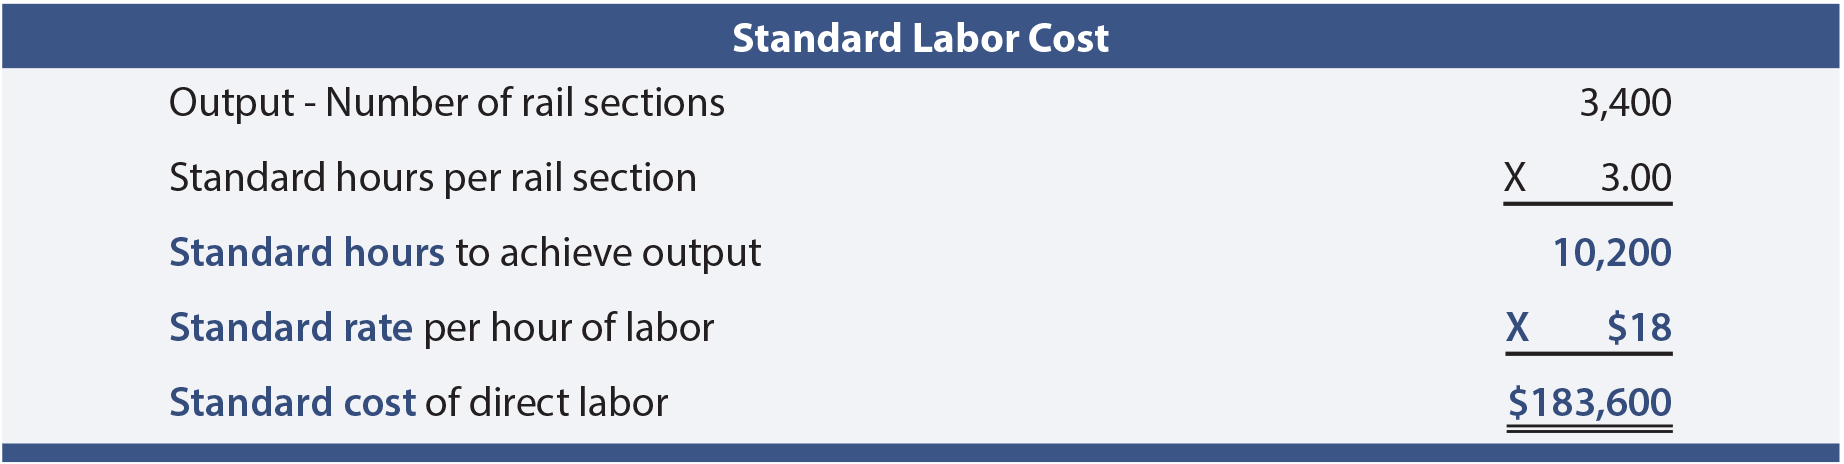 Standard Labor Cost